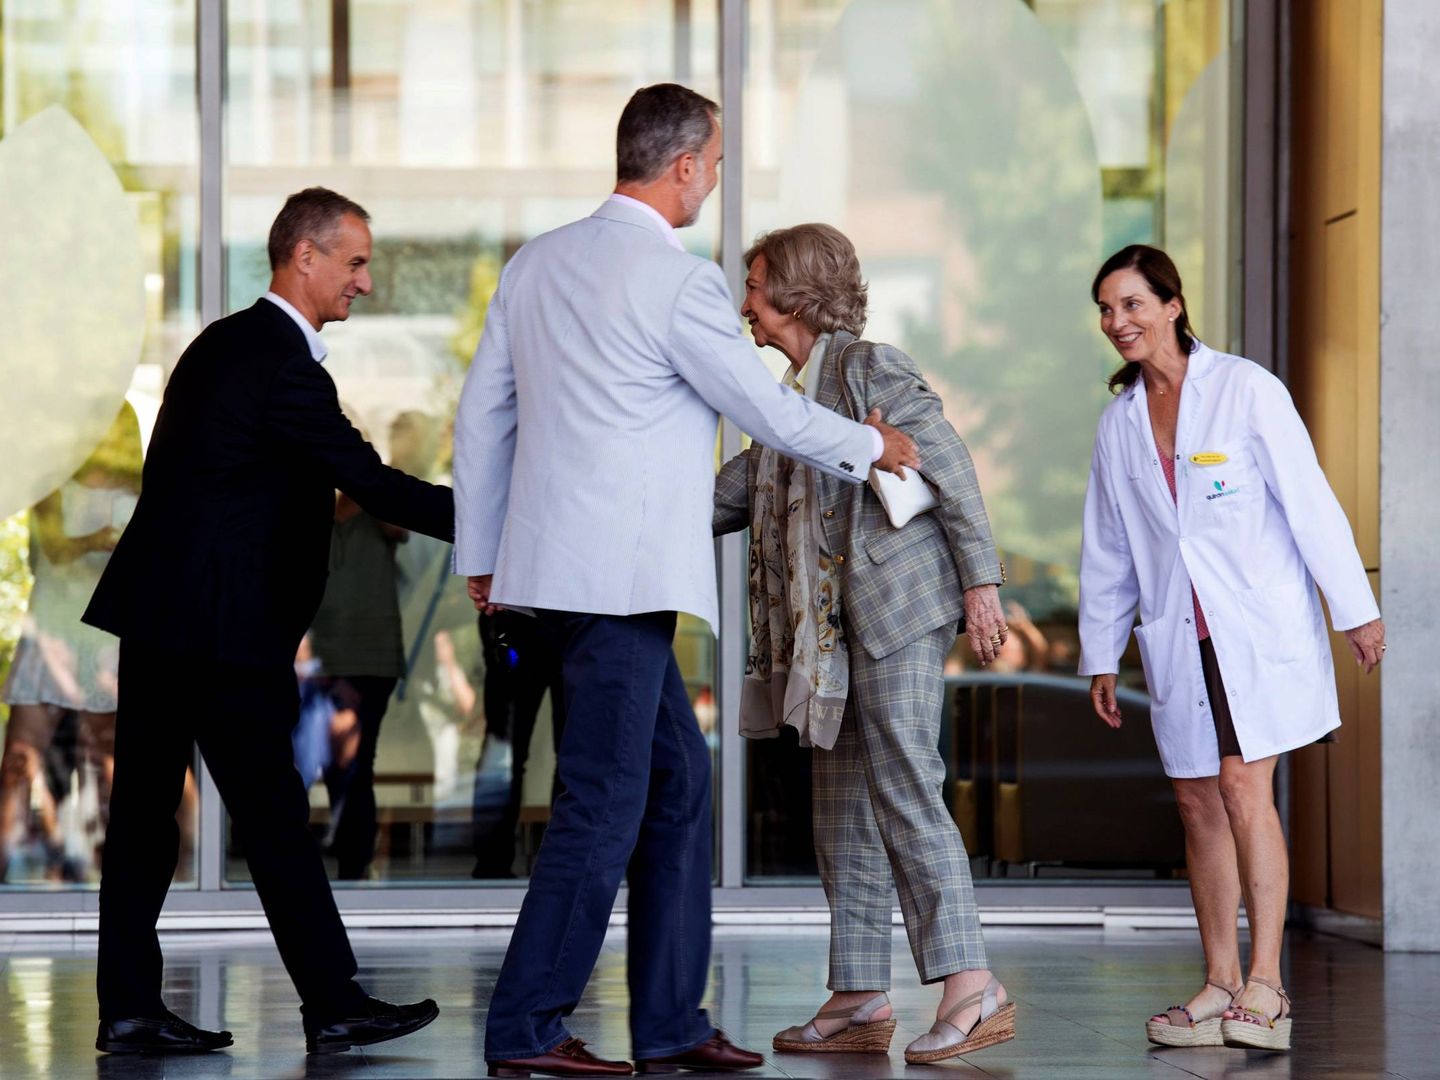 El rey y doña Sofía acuden al hospital donde es intervenido don Juan Carlos. (EFE)